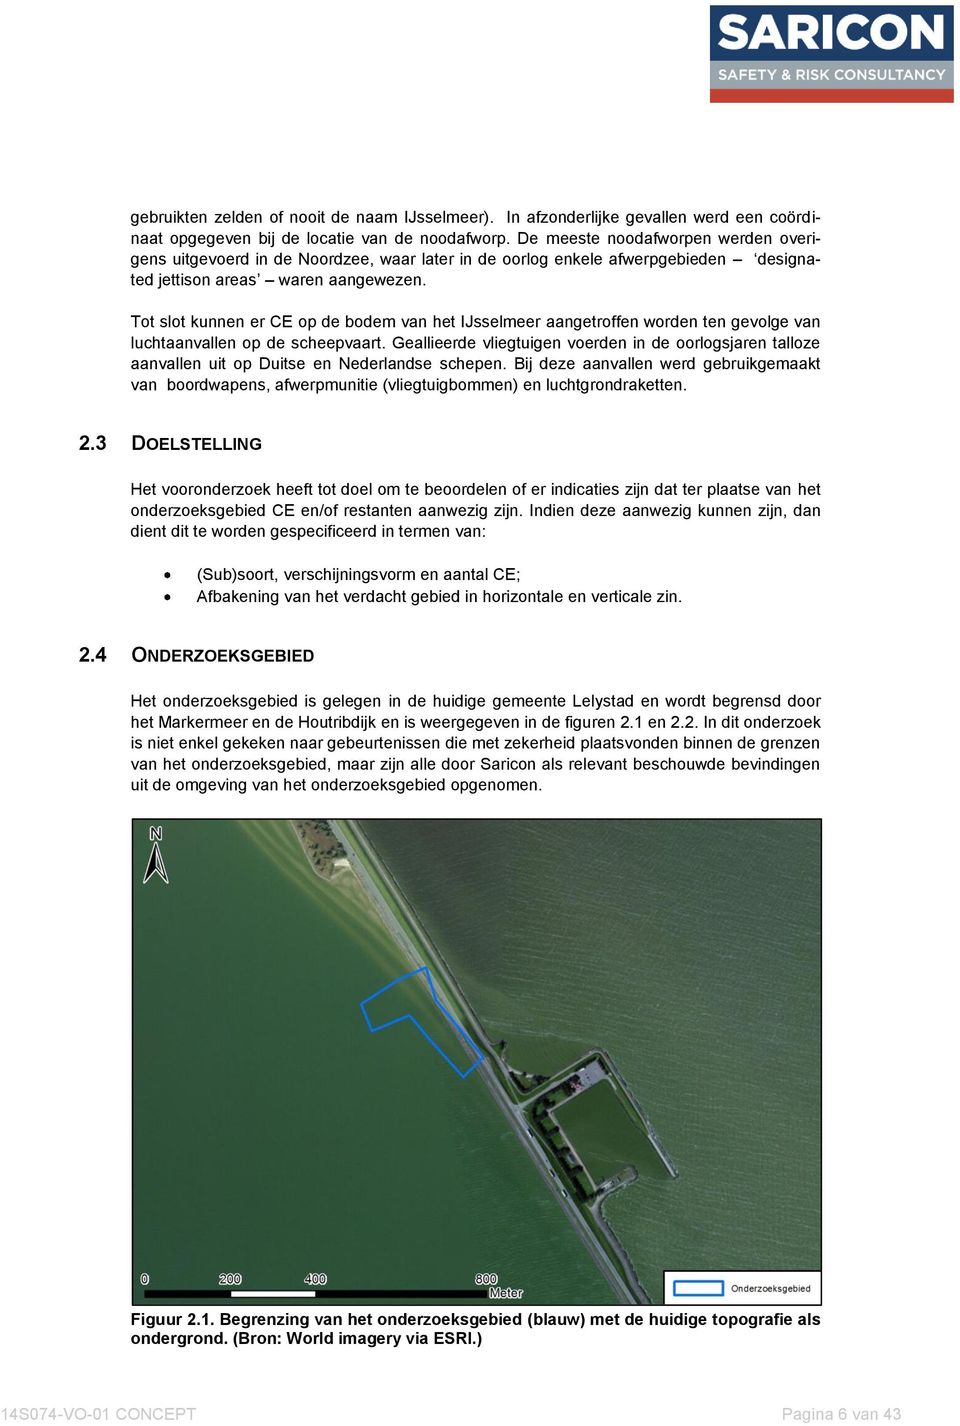 Tot slot kunnen er CE op de bodem van het IJsselmeer aangetroffen worden ten gevolge van luchtaanvallen op de scheepvaart.